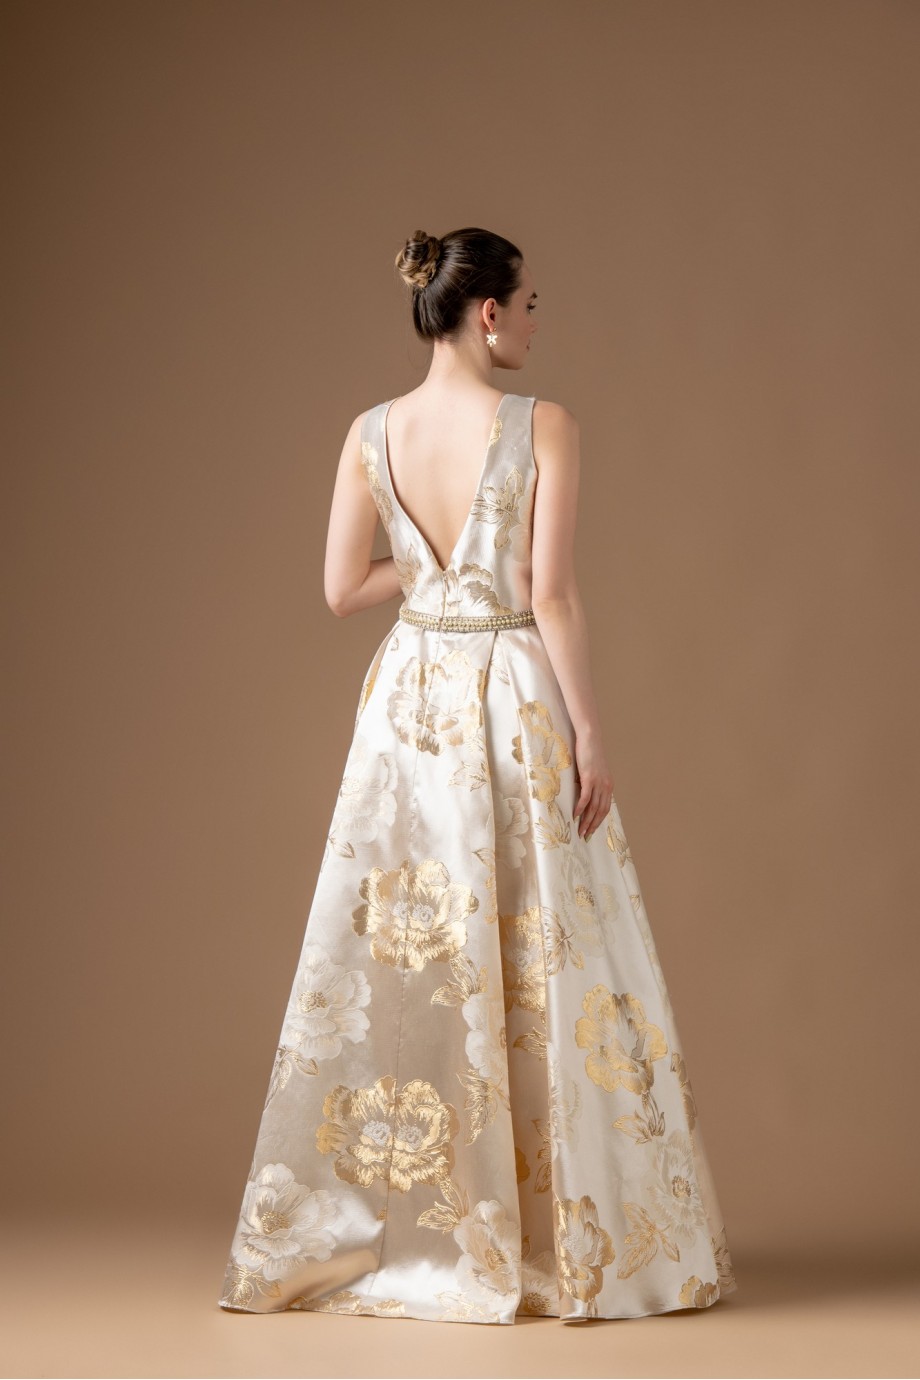 Μακρύ εκρου φόρεμα με μεγάλα χρυσά και λευκά λουλούδια